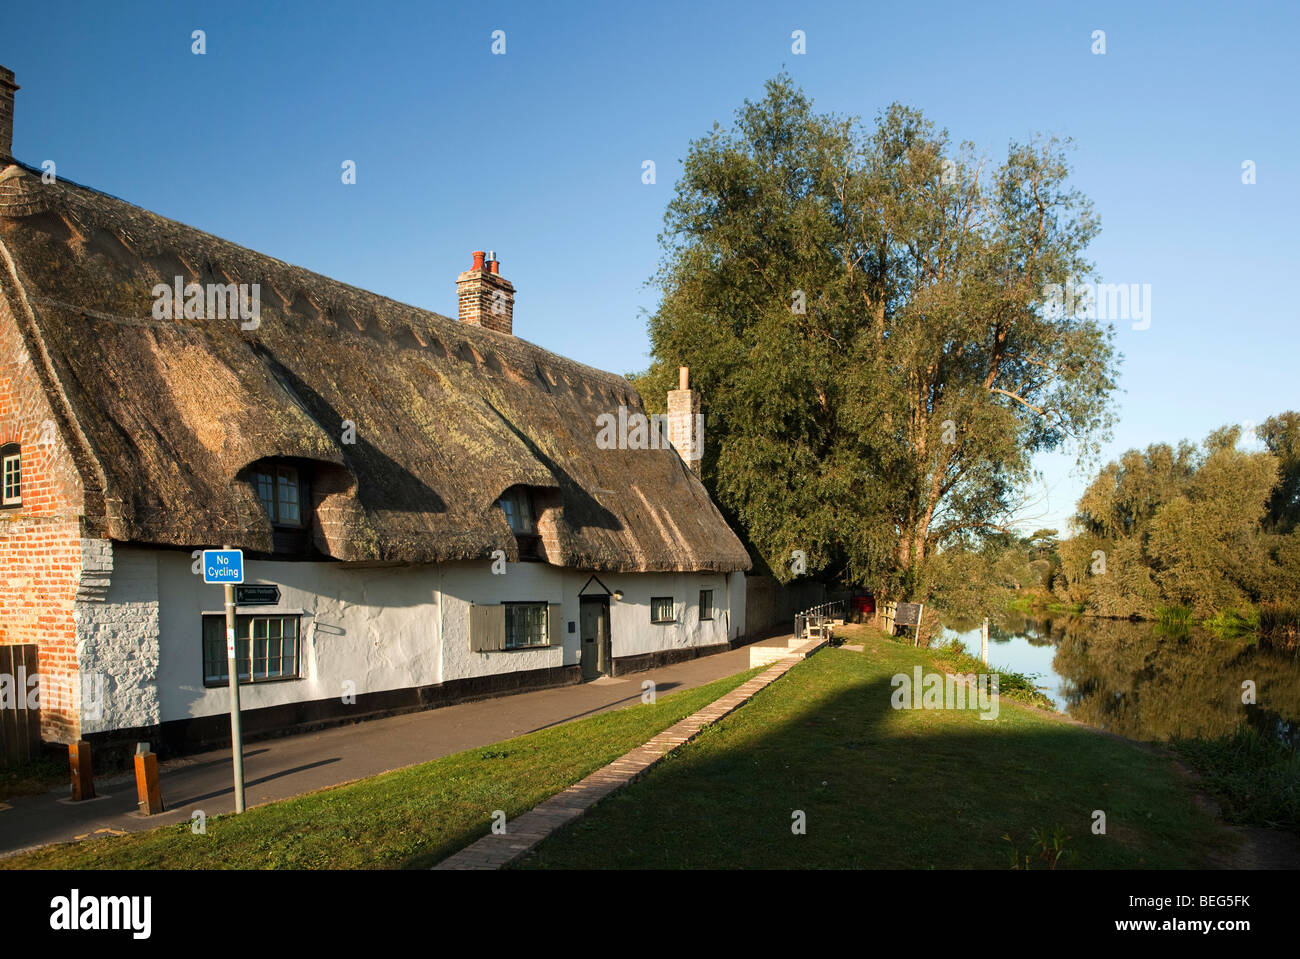 L'Angleterre, Cambridgeshire, Hemingford Grey, sentier public passé riverside cottage de chaume idyllique Banque D'Images